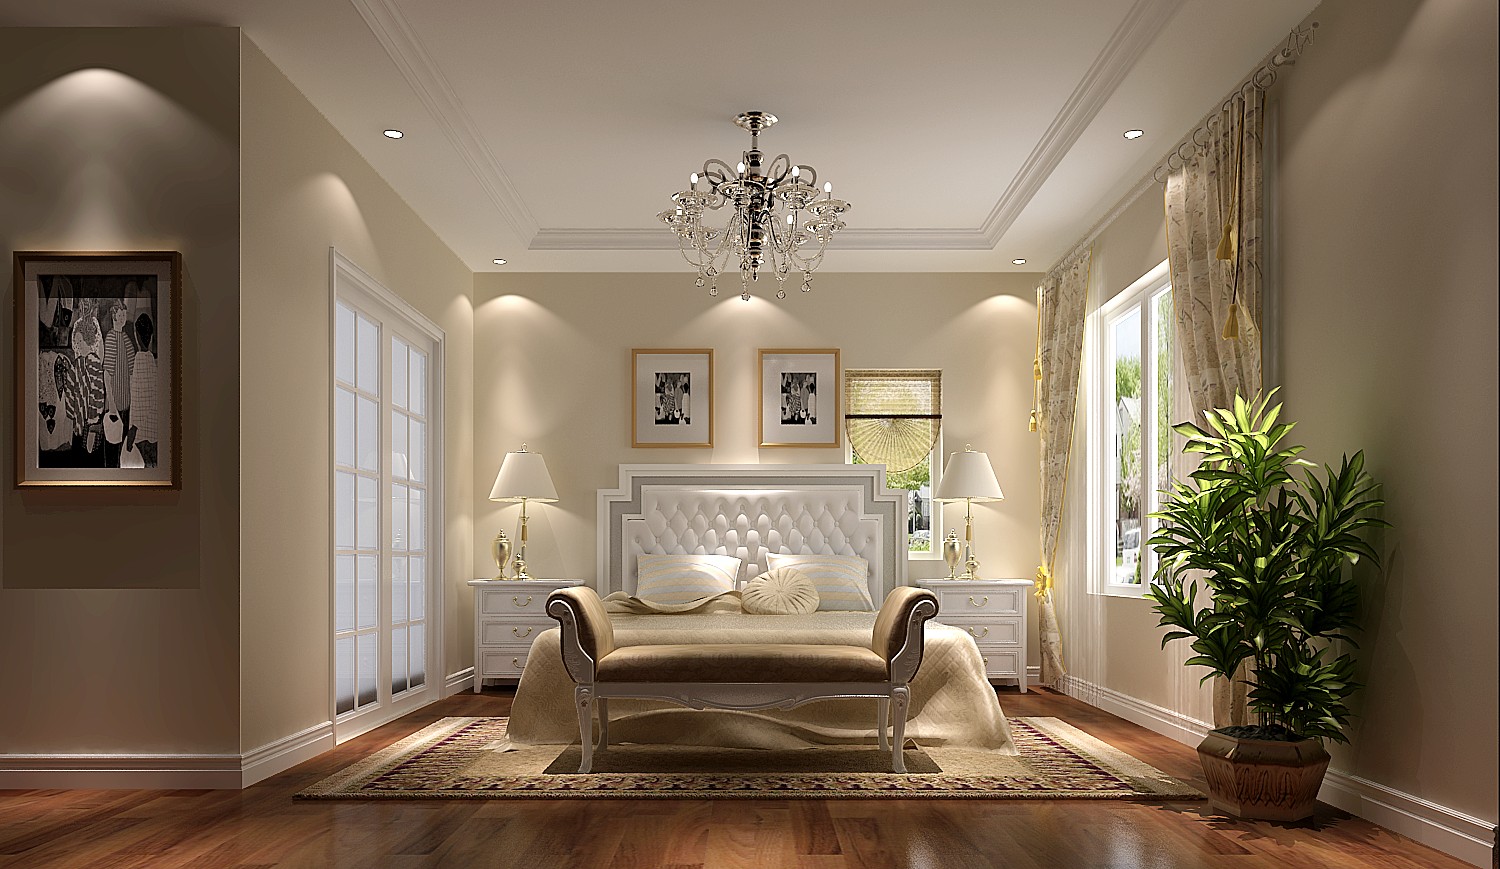 高度国际 欧式 别墅 卧室图片来自高度国际在14w打造简单舒适的潮白河孔雀城的分享